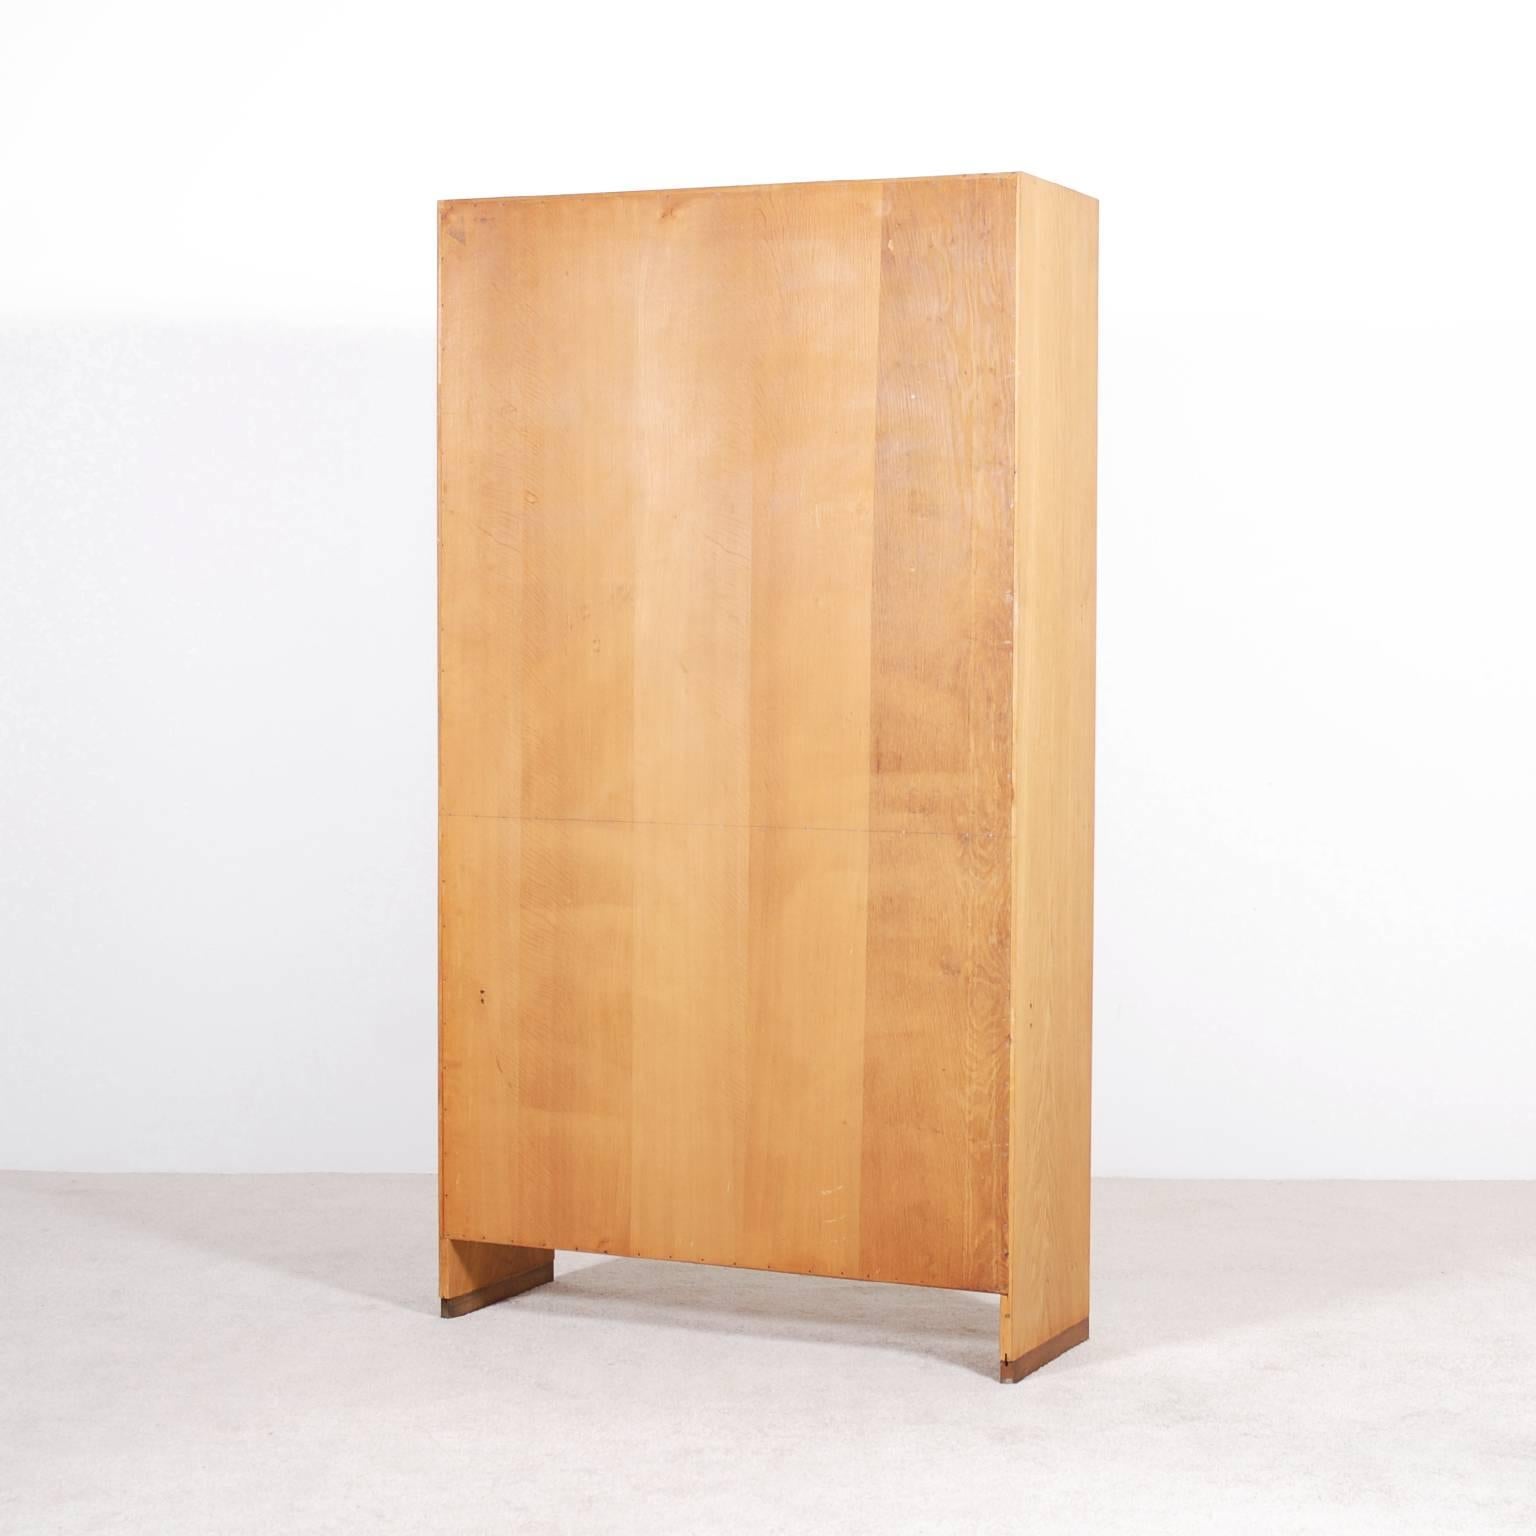 Scandinavian Modern Hans J. Wegner Oak Bookcase for Ry Mobler, 1957